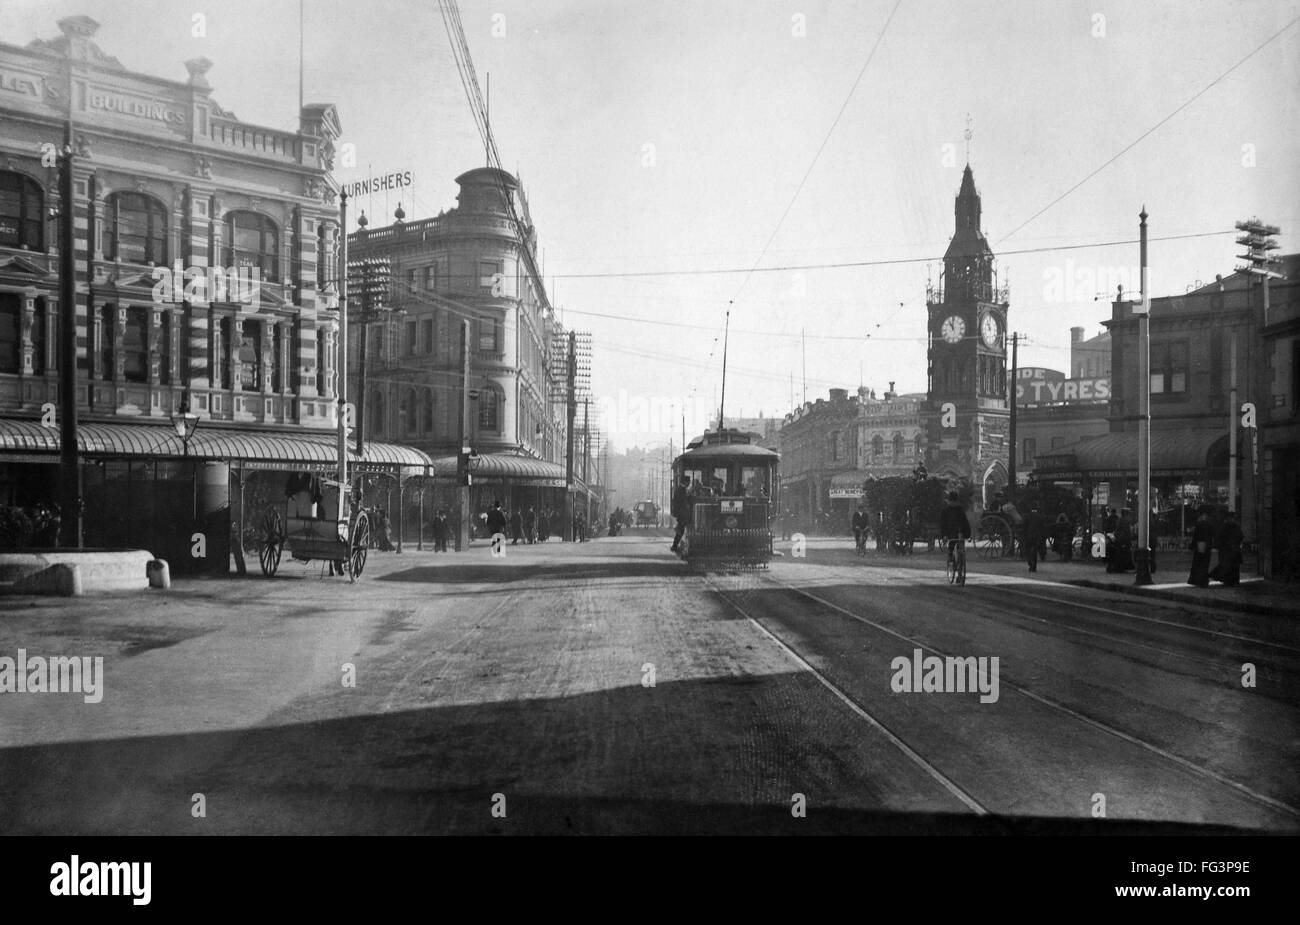 La NOUVELLE ZELANDE, c1920. /NA streetcar dans Christchurch, Nouvelle Zélande. Photographie, c1920. Banque D'Images